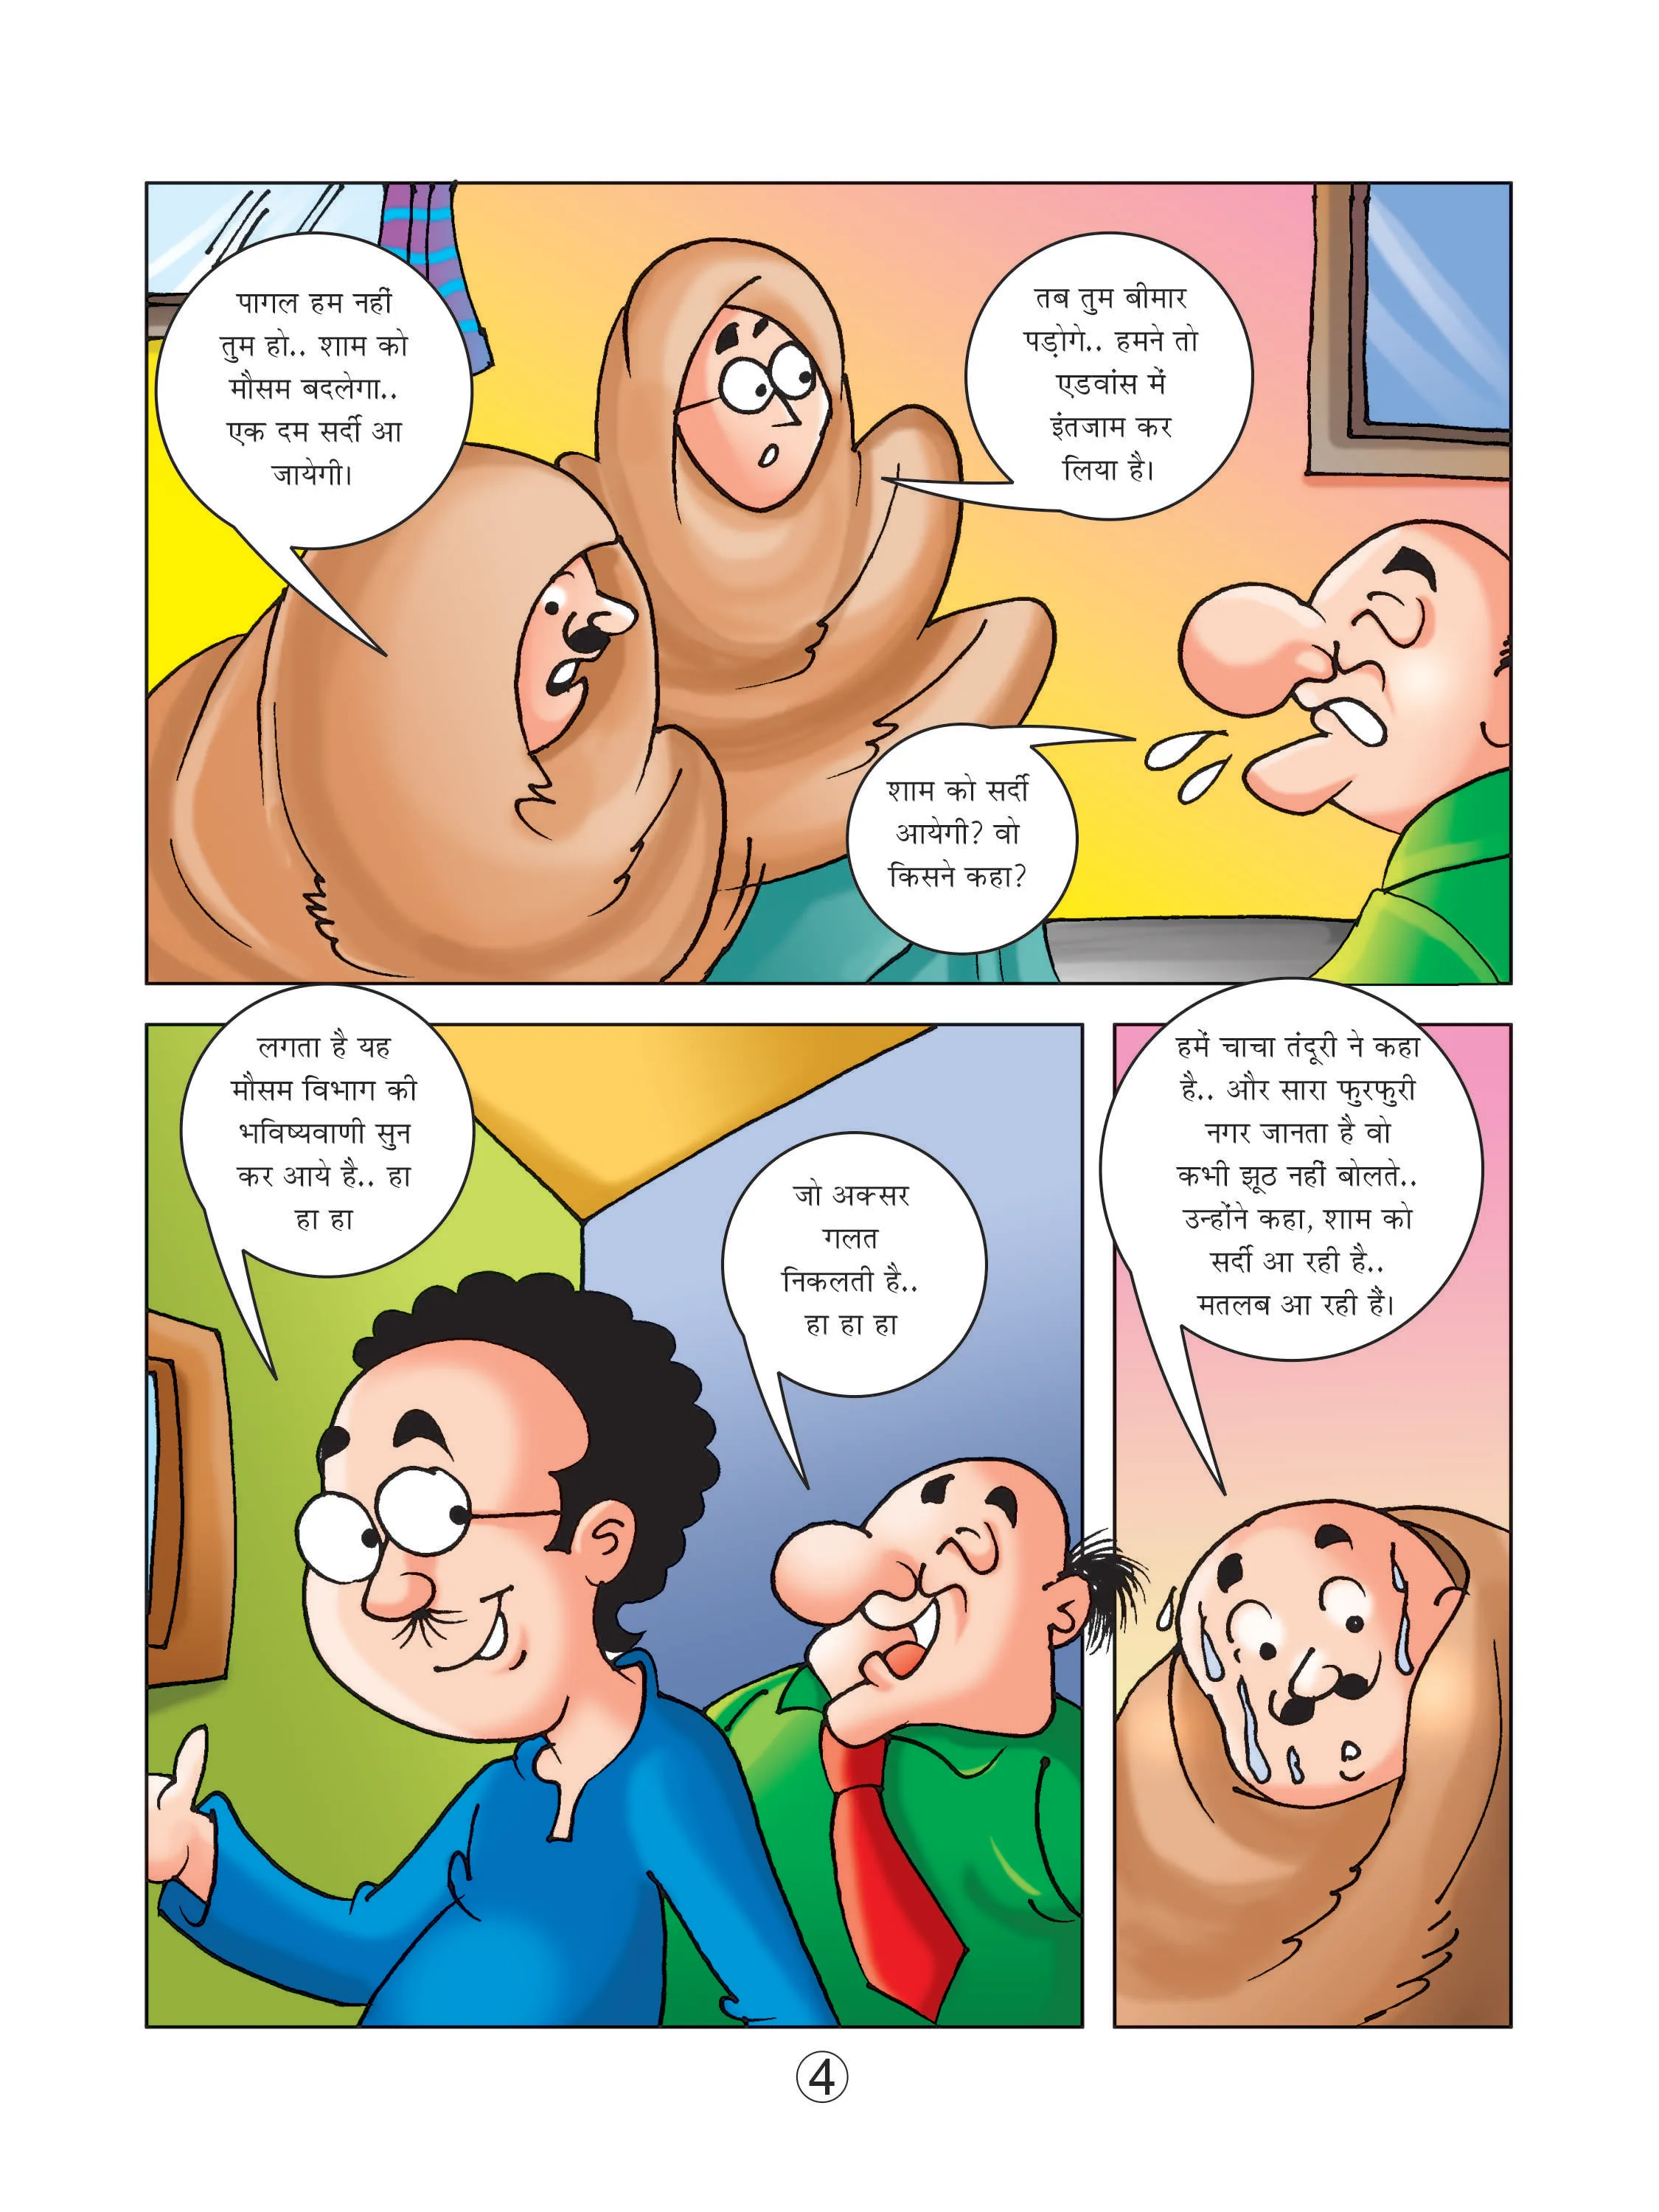 Lotpot cartoon character motu patlu comics